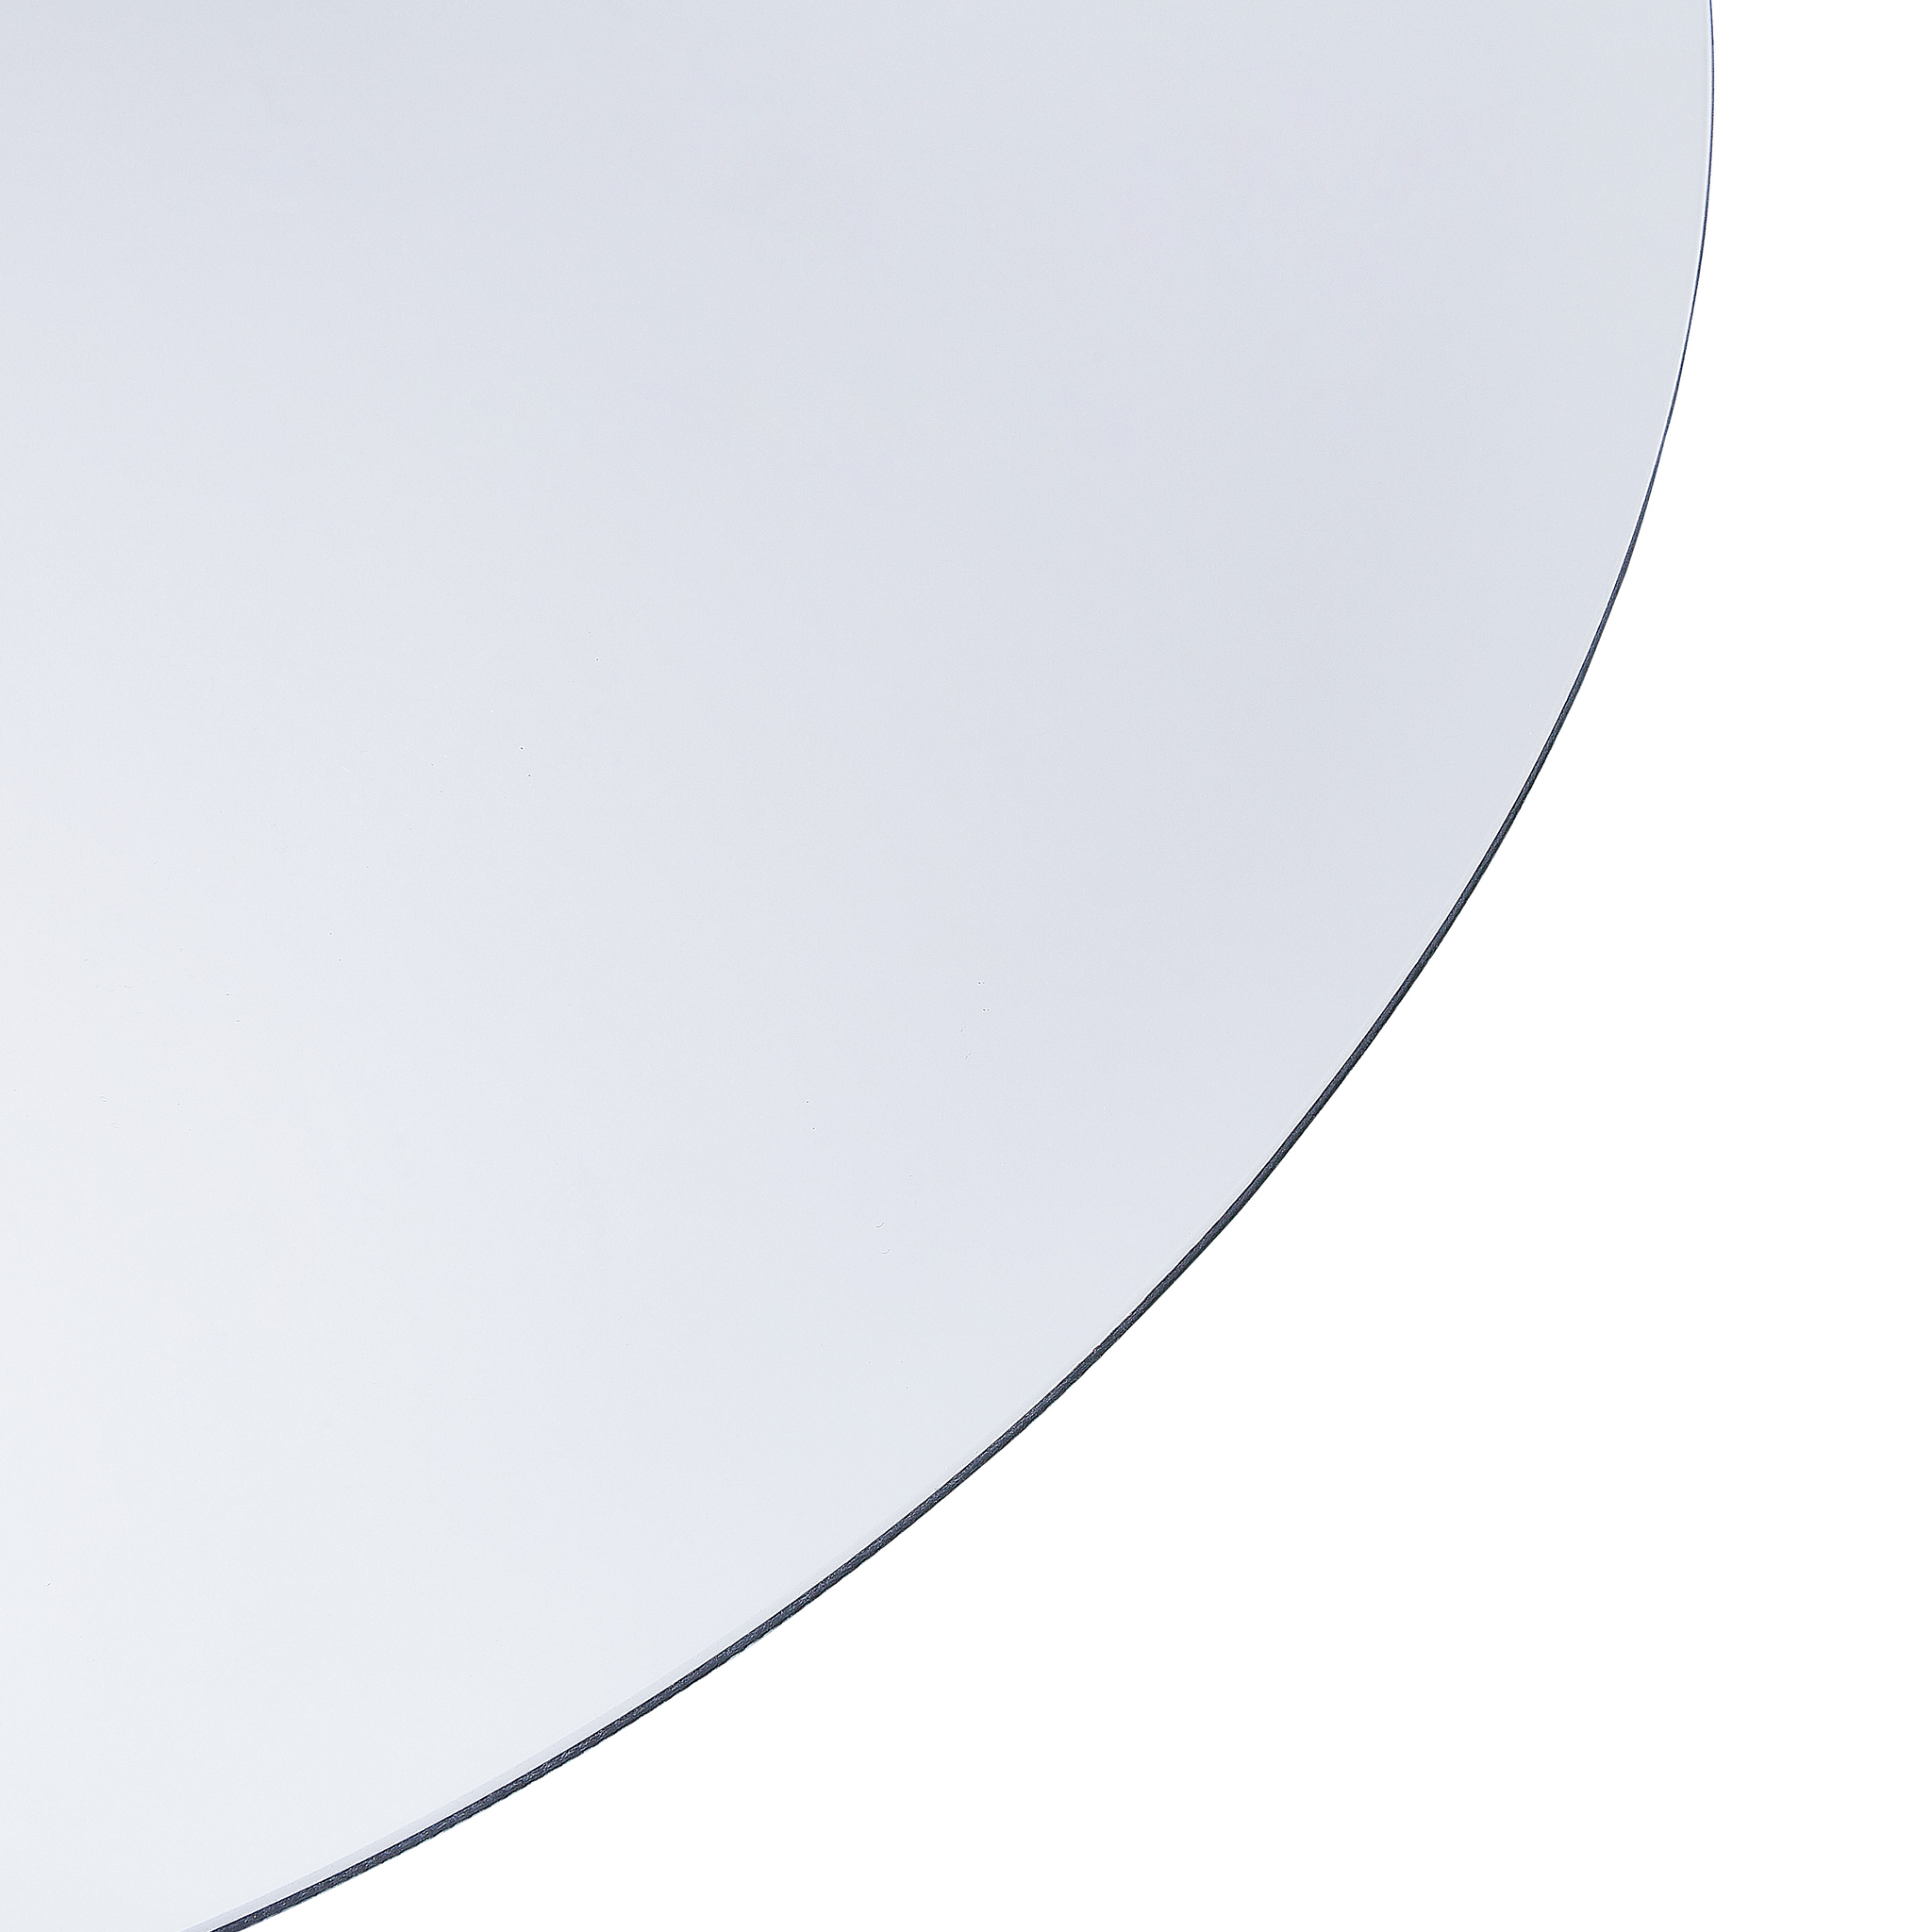 Beliani CALLAC - LED-spiegel - Zilver - Glas